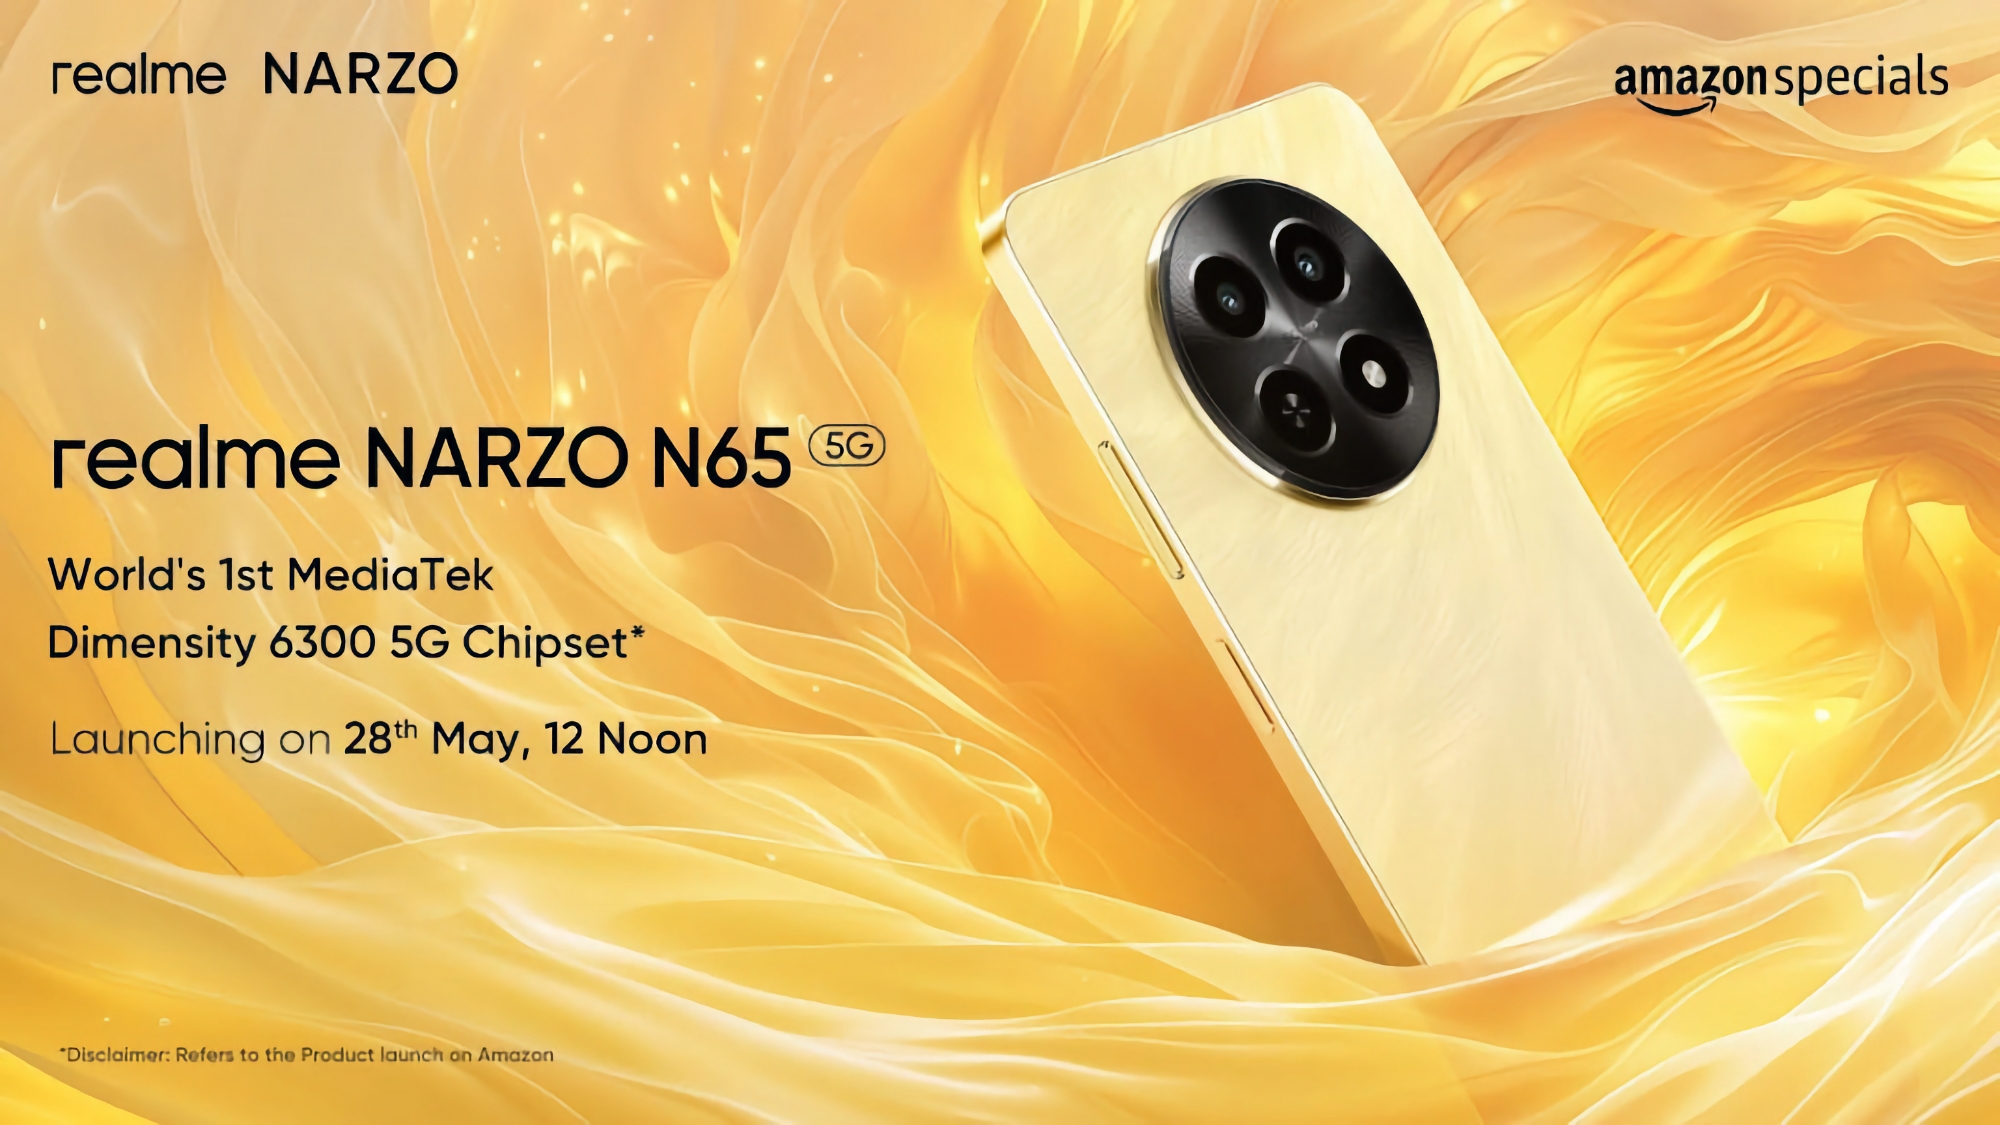 realme dévoilera le 28 mai le smartphone économique Narzo N65 5G équipé du processeur MediaTek Dimensity 6300